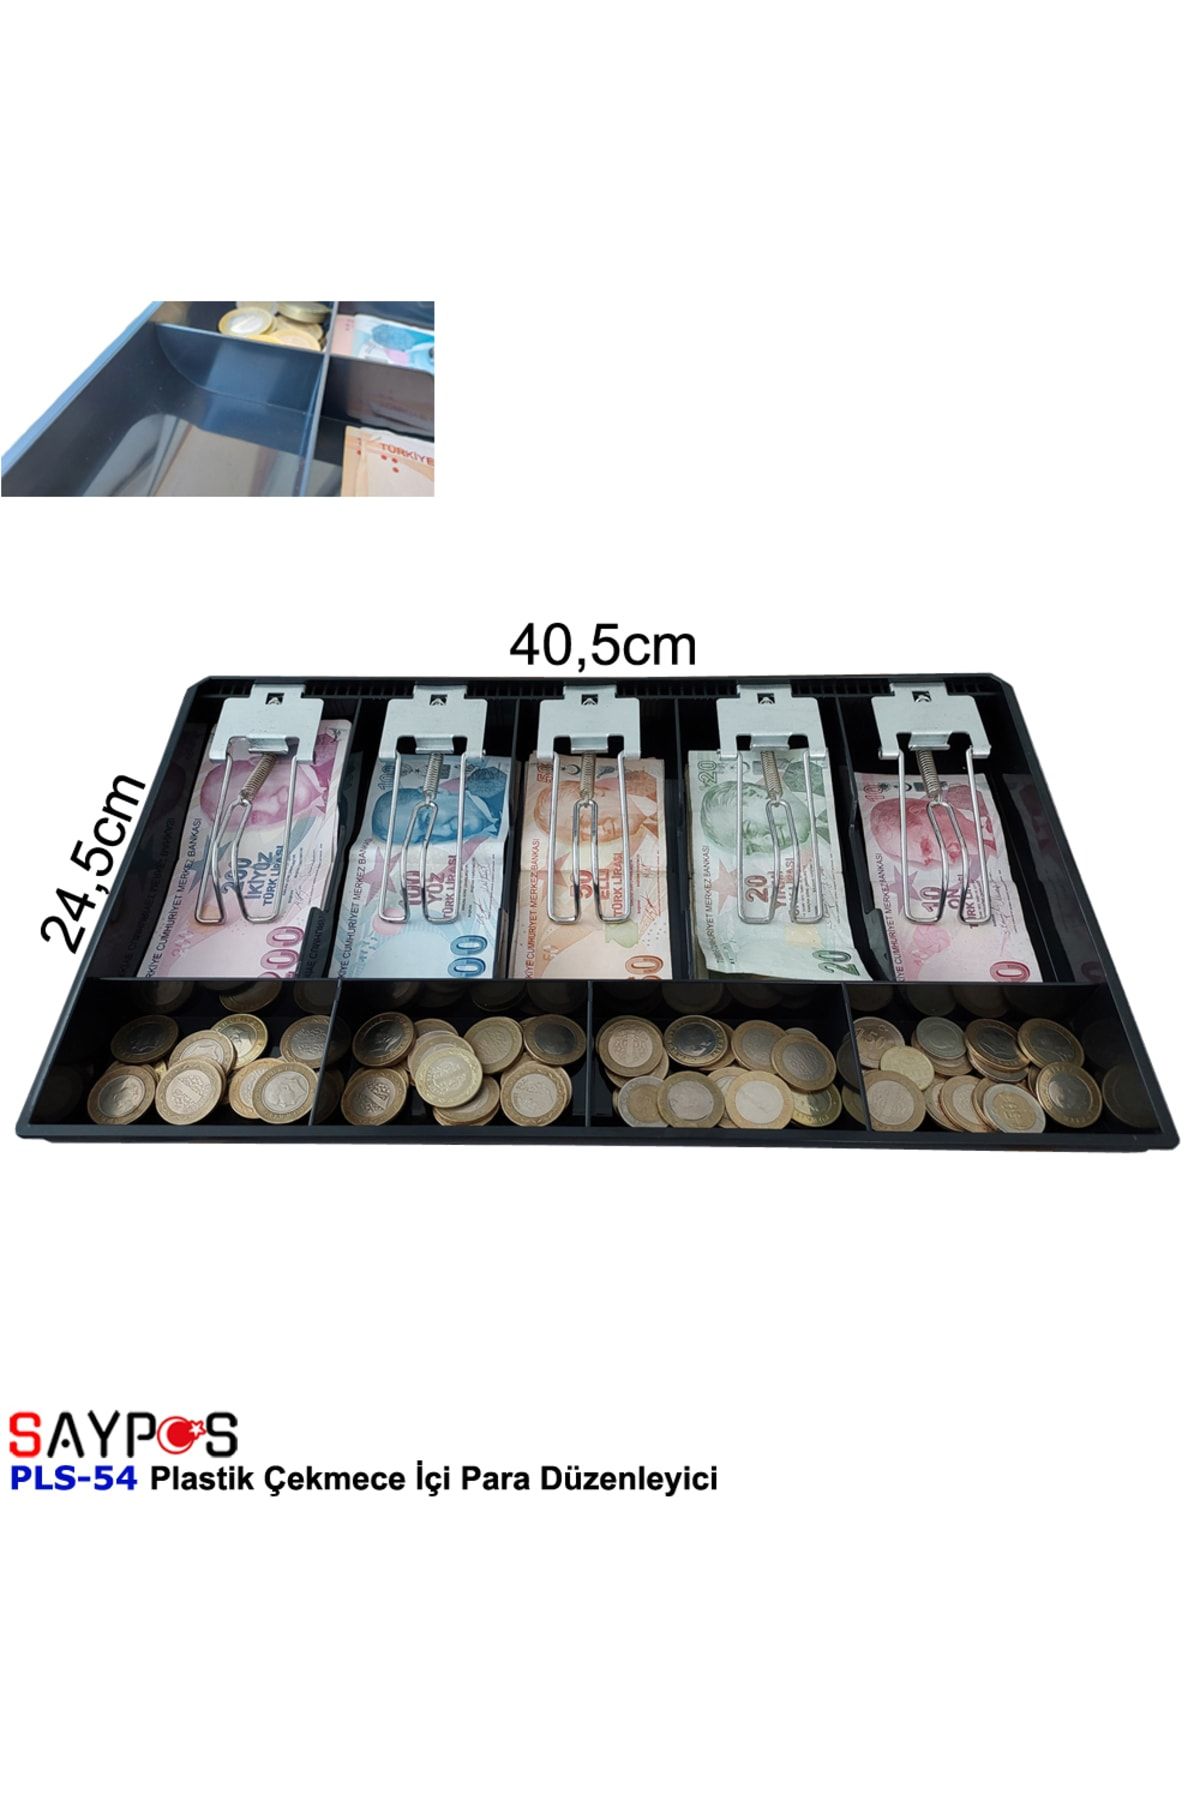 SAYPOS Rampalı Plastik Çekmece Içi Para Düzenleyici 5 Banknot 4 Bozuk Para Gözlü 40,5 X 24,5 X 3,5cm